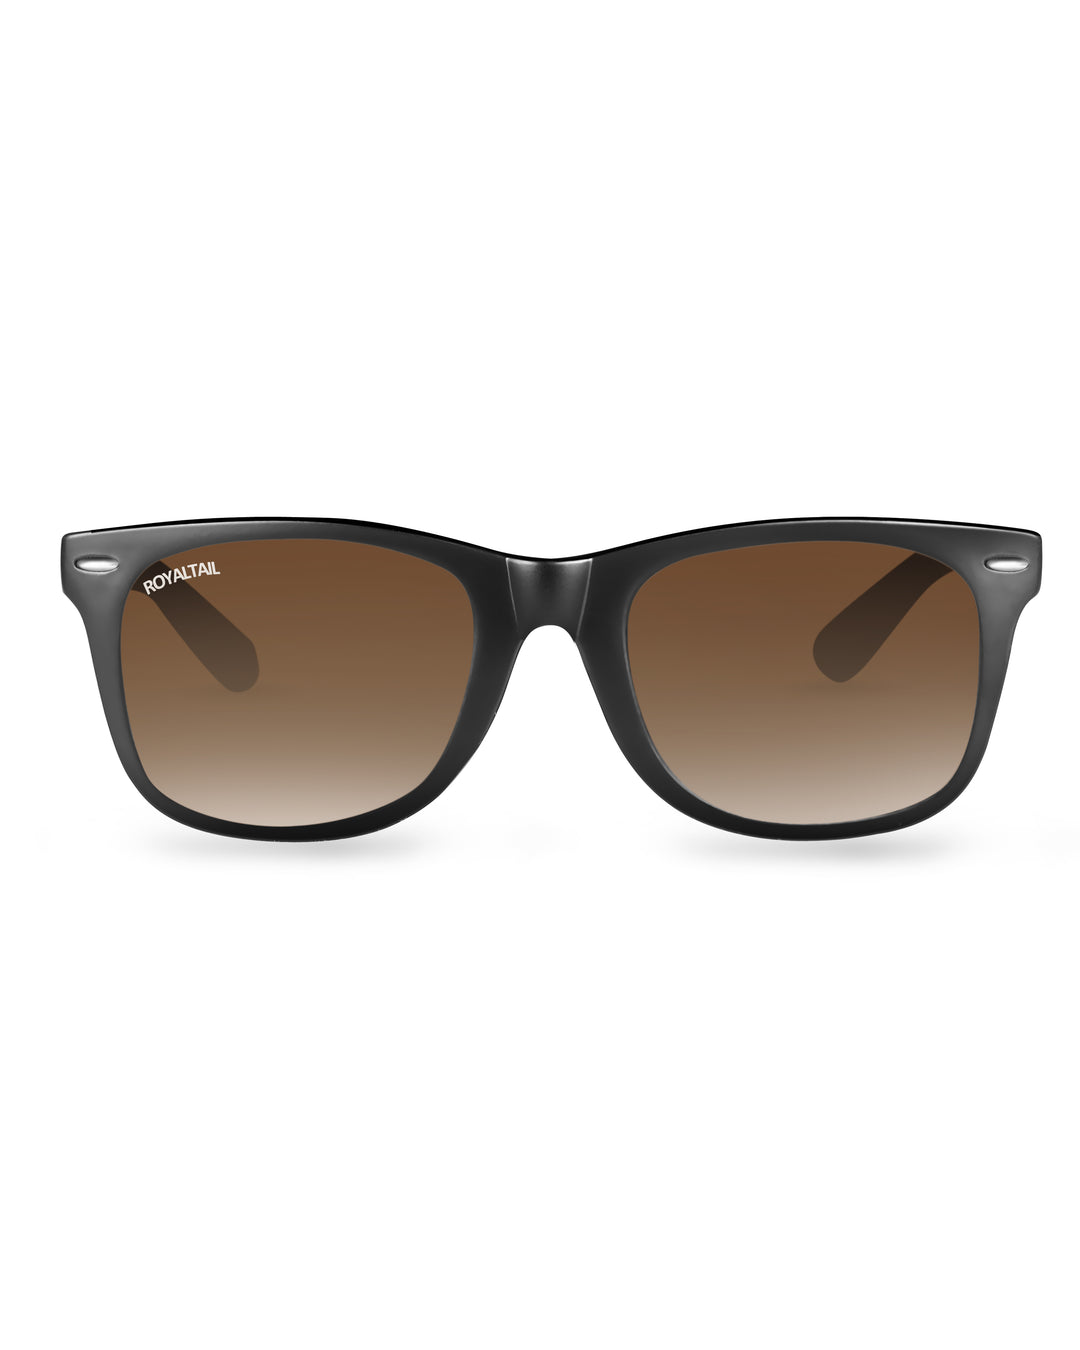 Buy Black Glass and Black Frame Wayfarer Sunglasses for Men and Women –  Royaltail